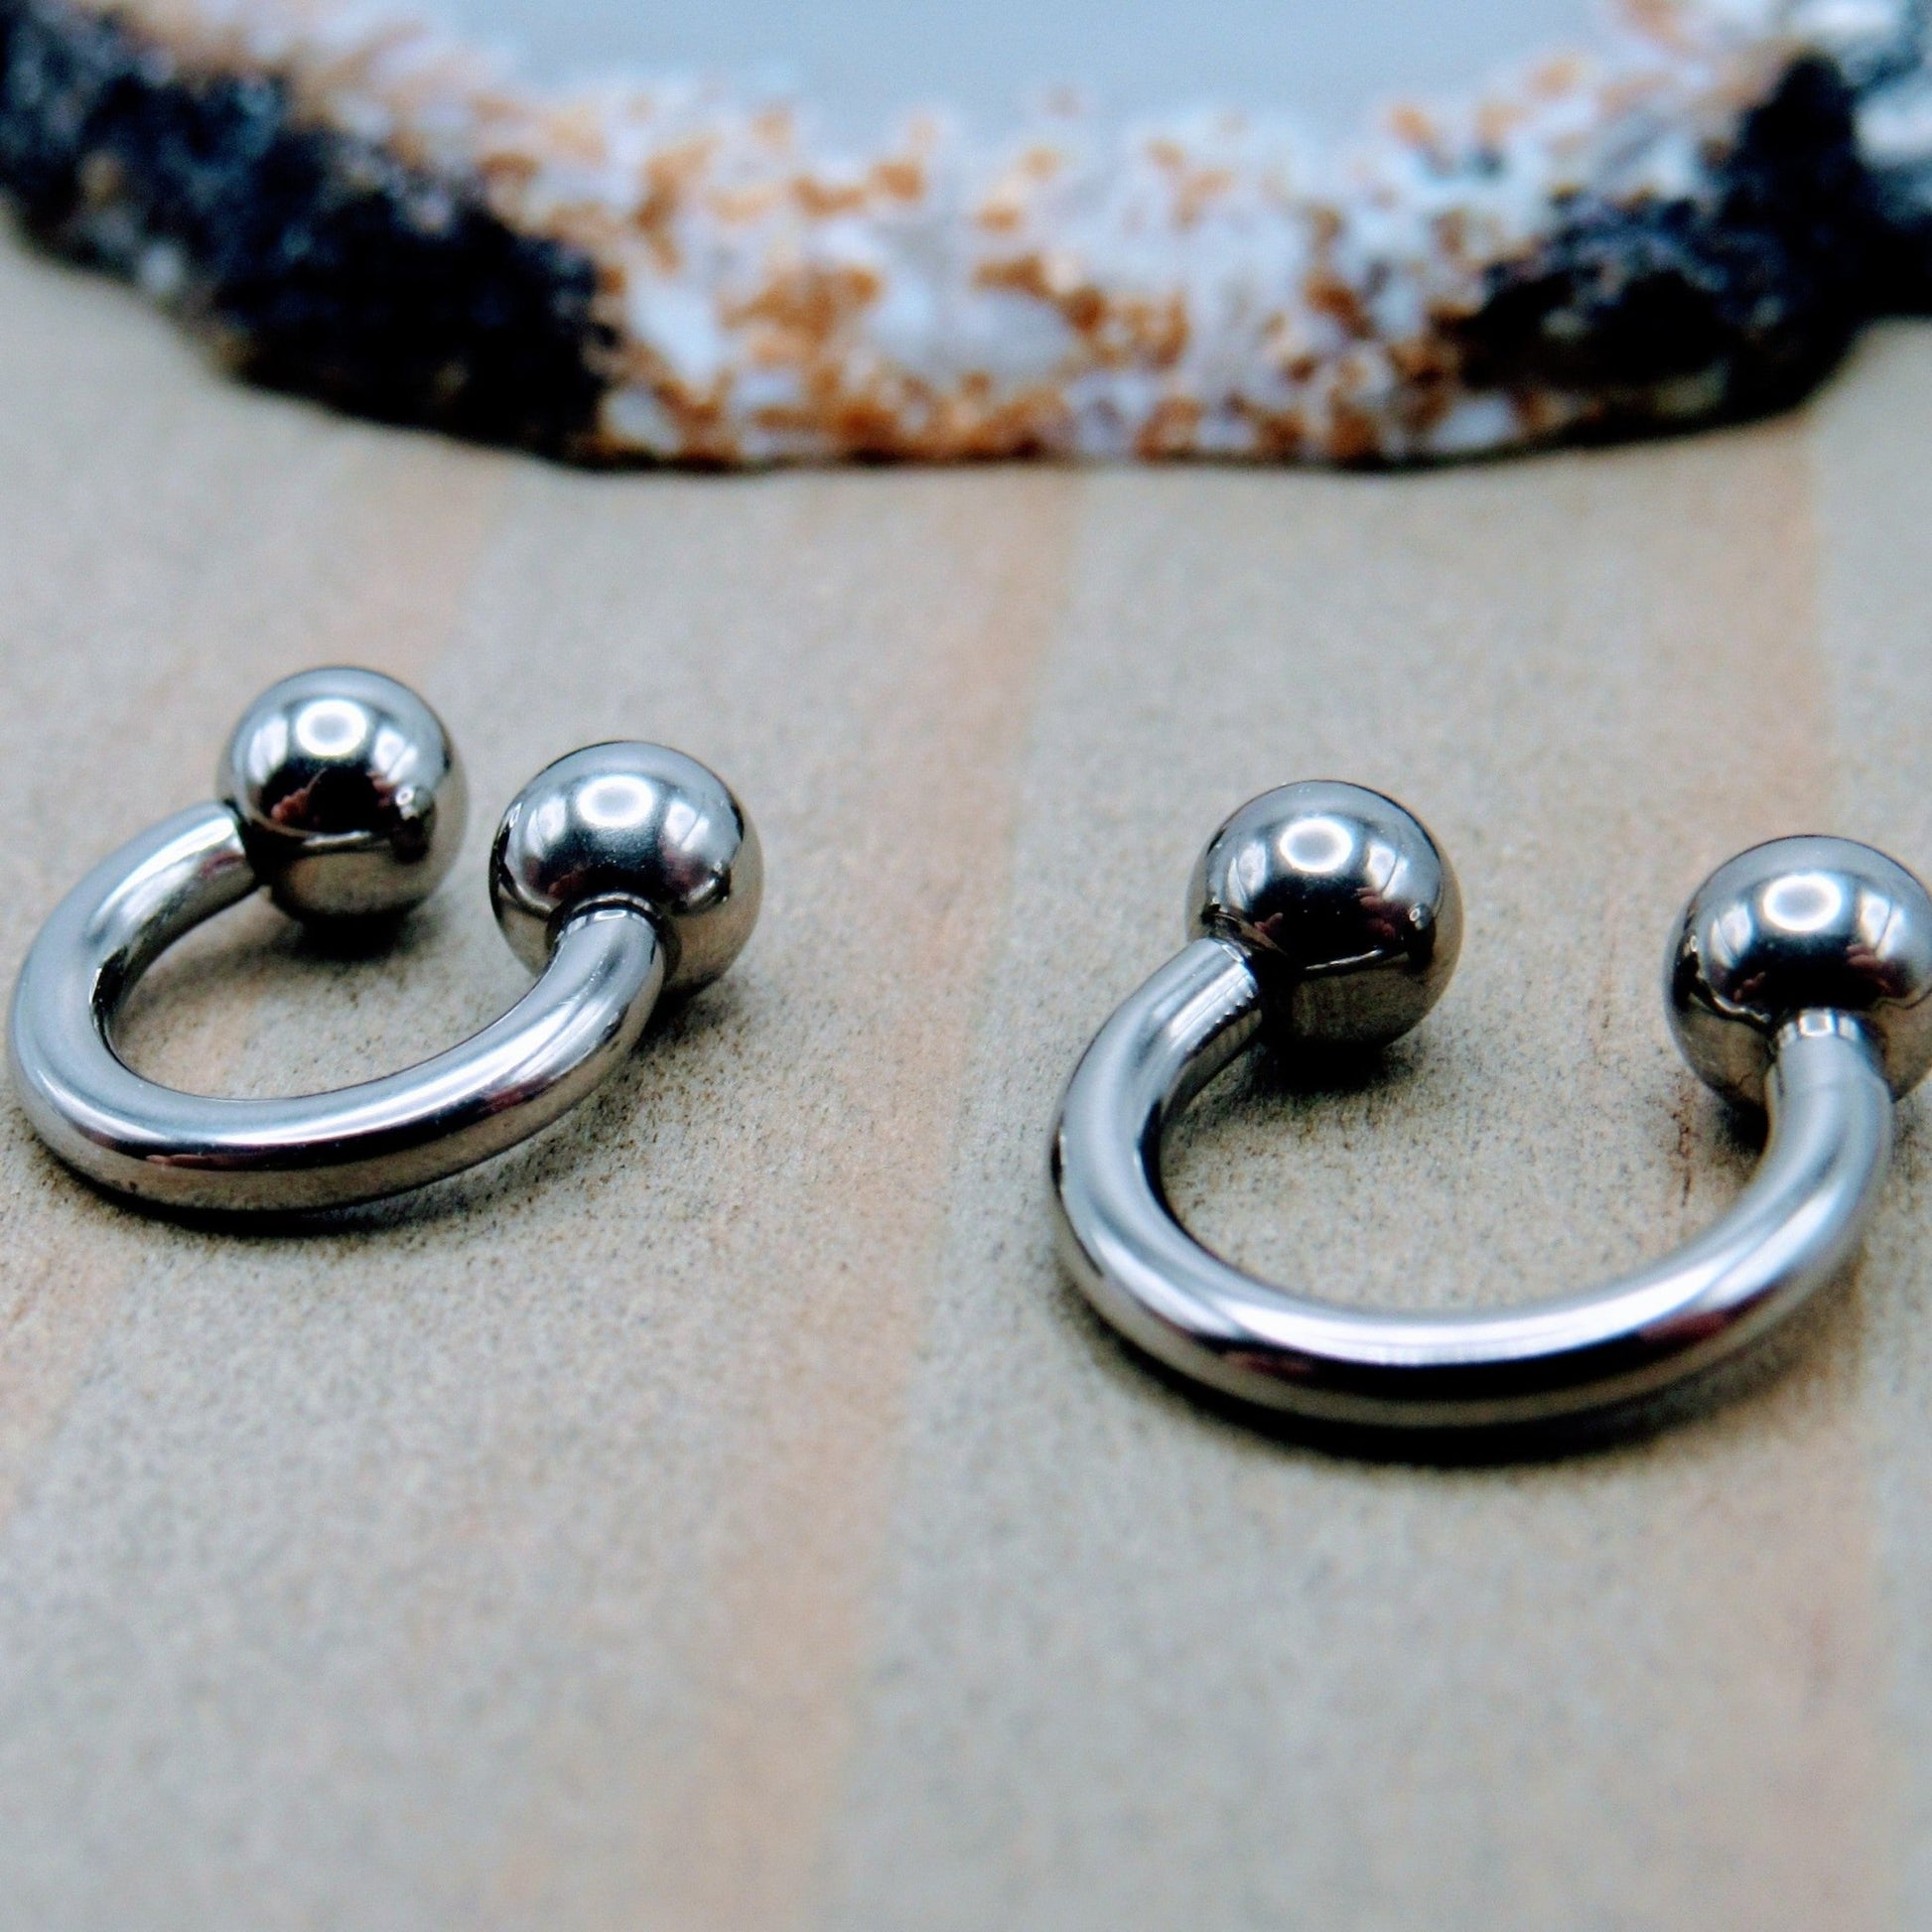 Stainless steel horseshoe ear piercing hoop earring 16g 3/8 diameter –  Siren Body Jewelry